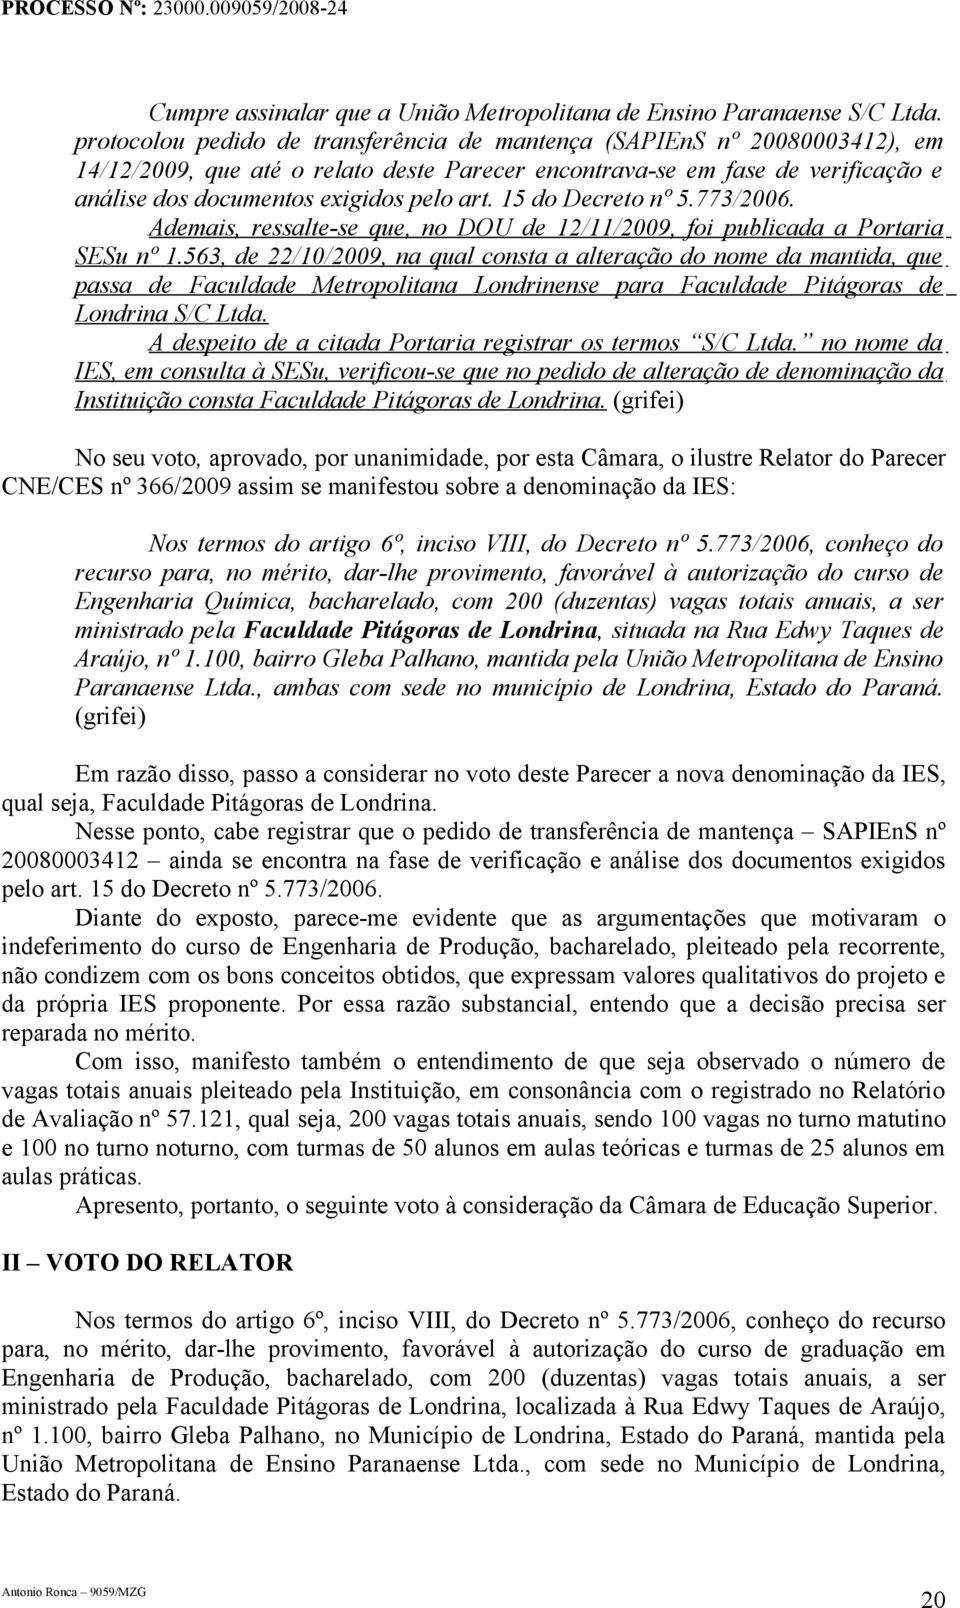 15 do Decreto nº 5.773/2006. Ademais, ressalte-se que, no DOU de 12/11/2009, foi publicada a Portaria SESu nº 1.